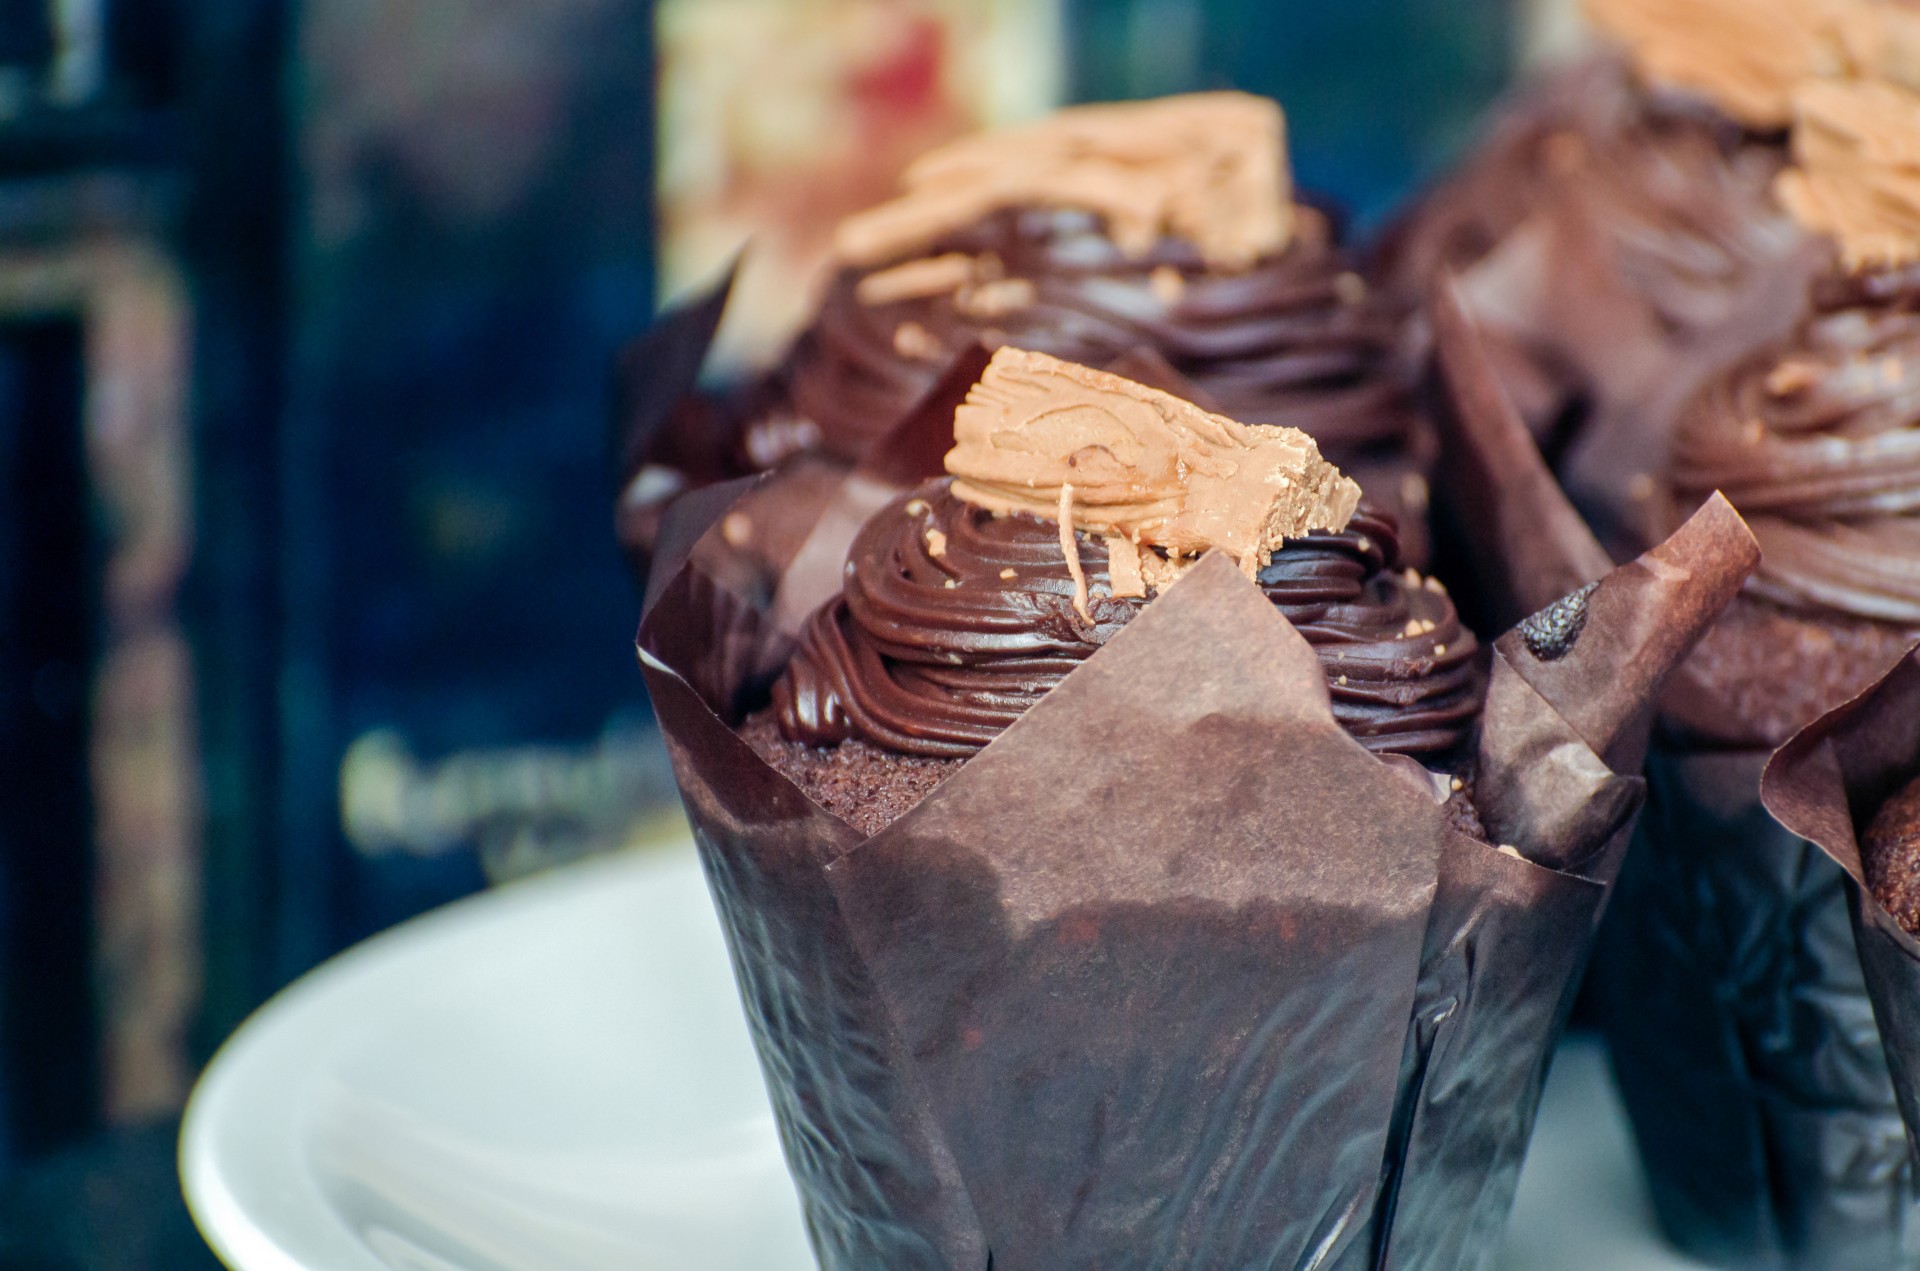 muffin chocolate baking free photo